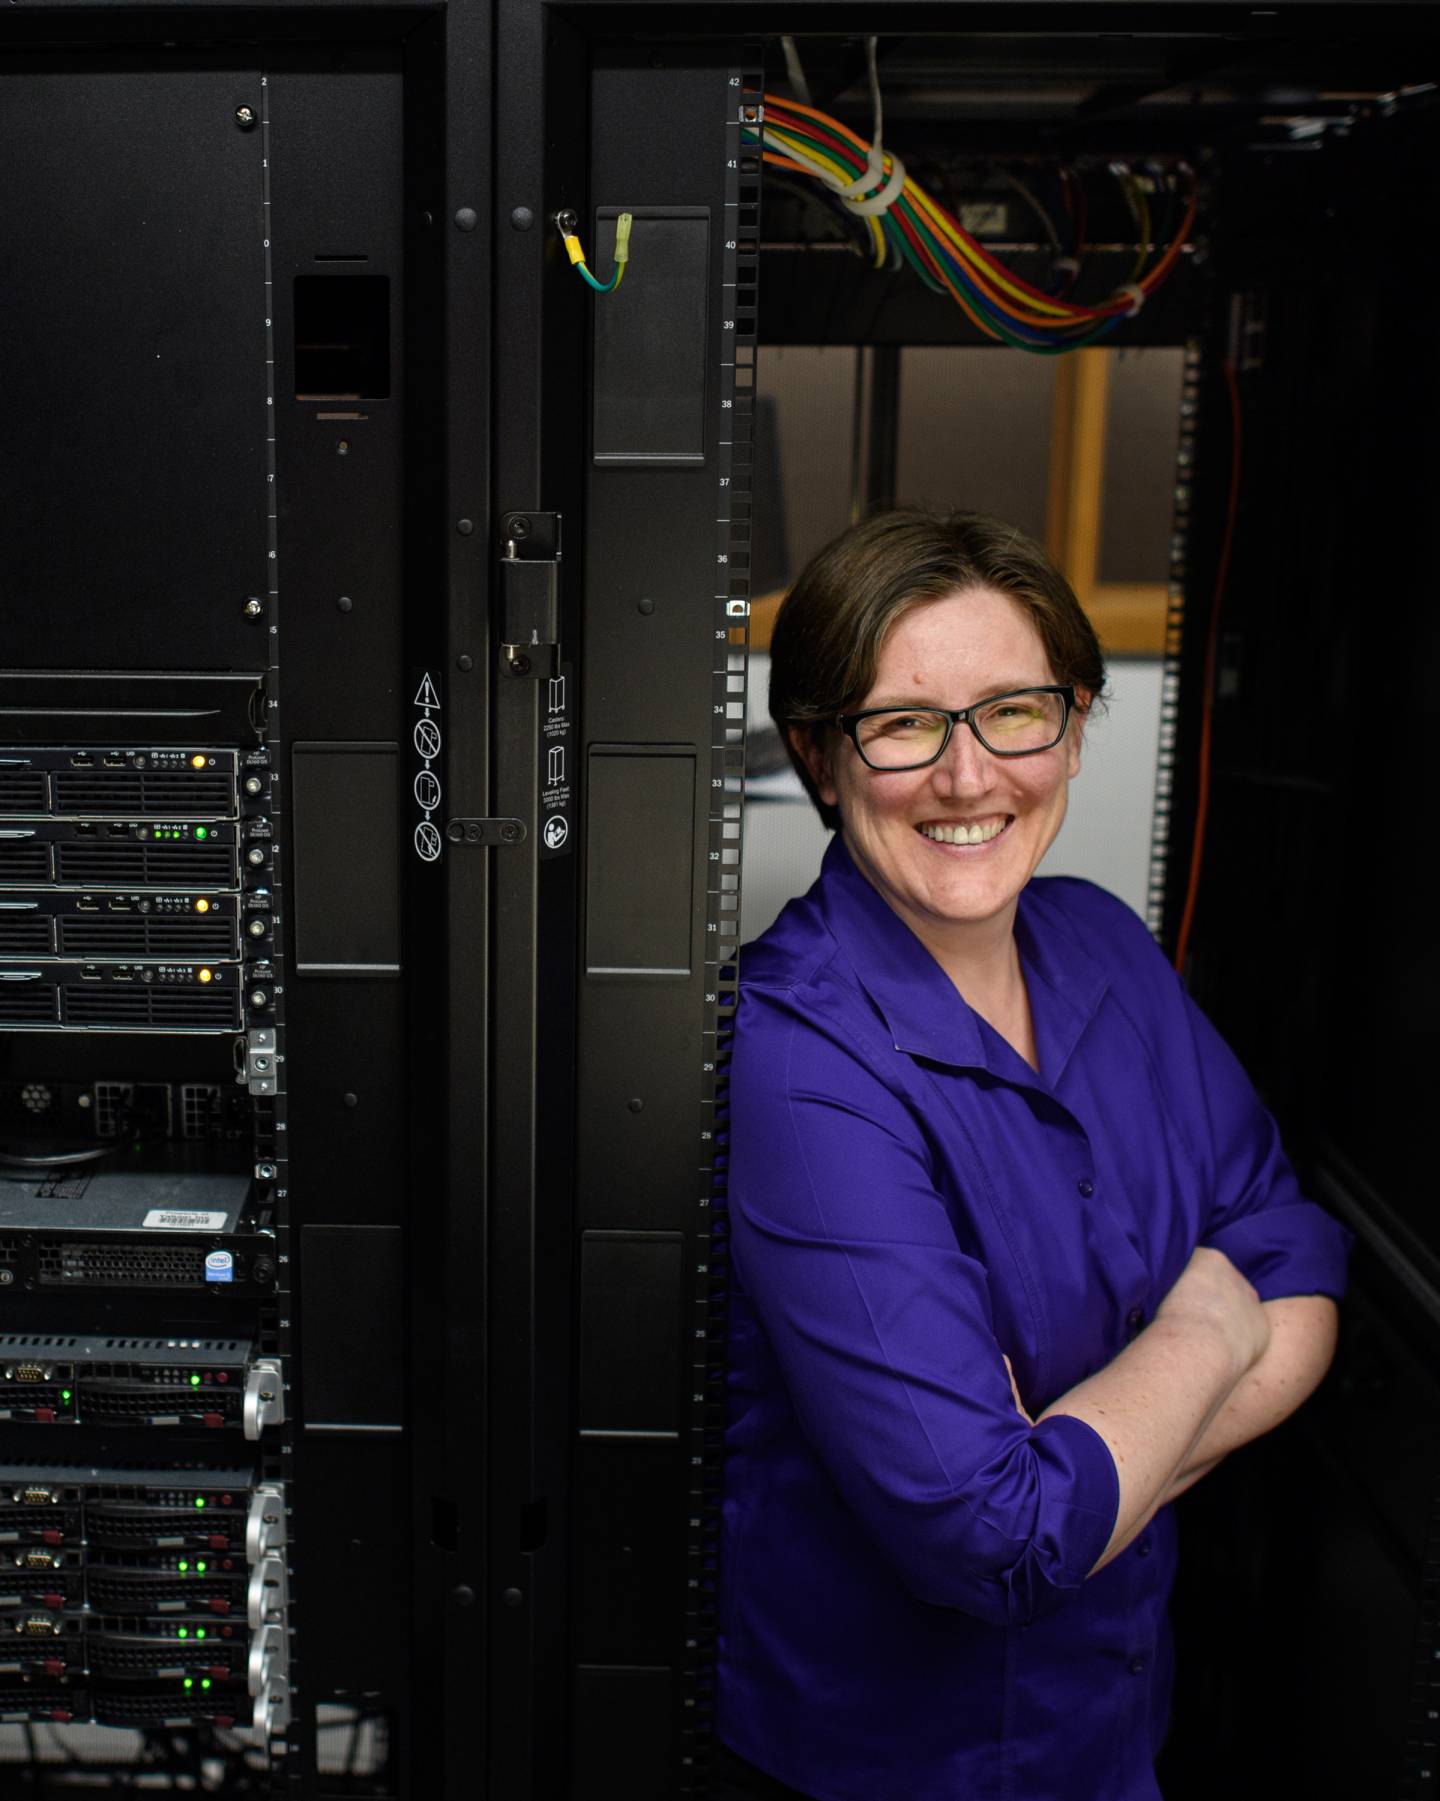 Jennifer Rexford in between mainframes